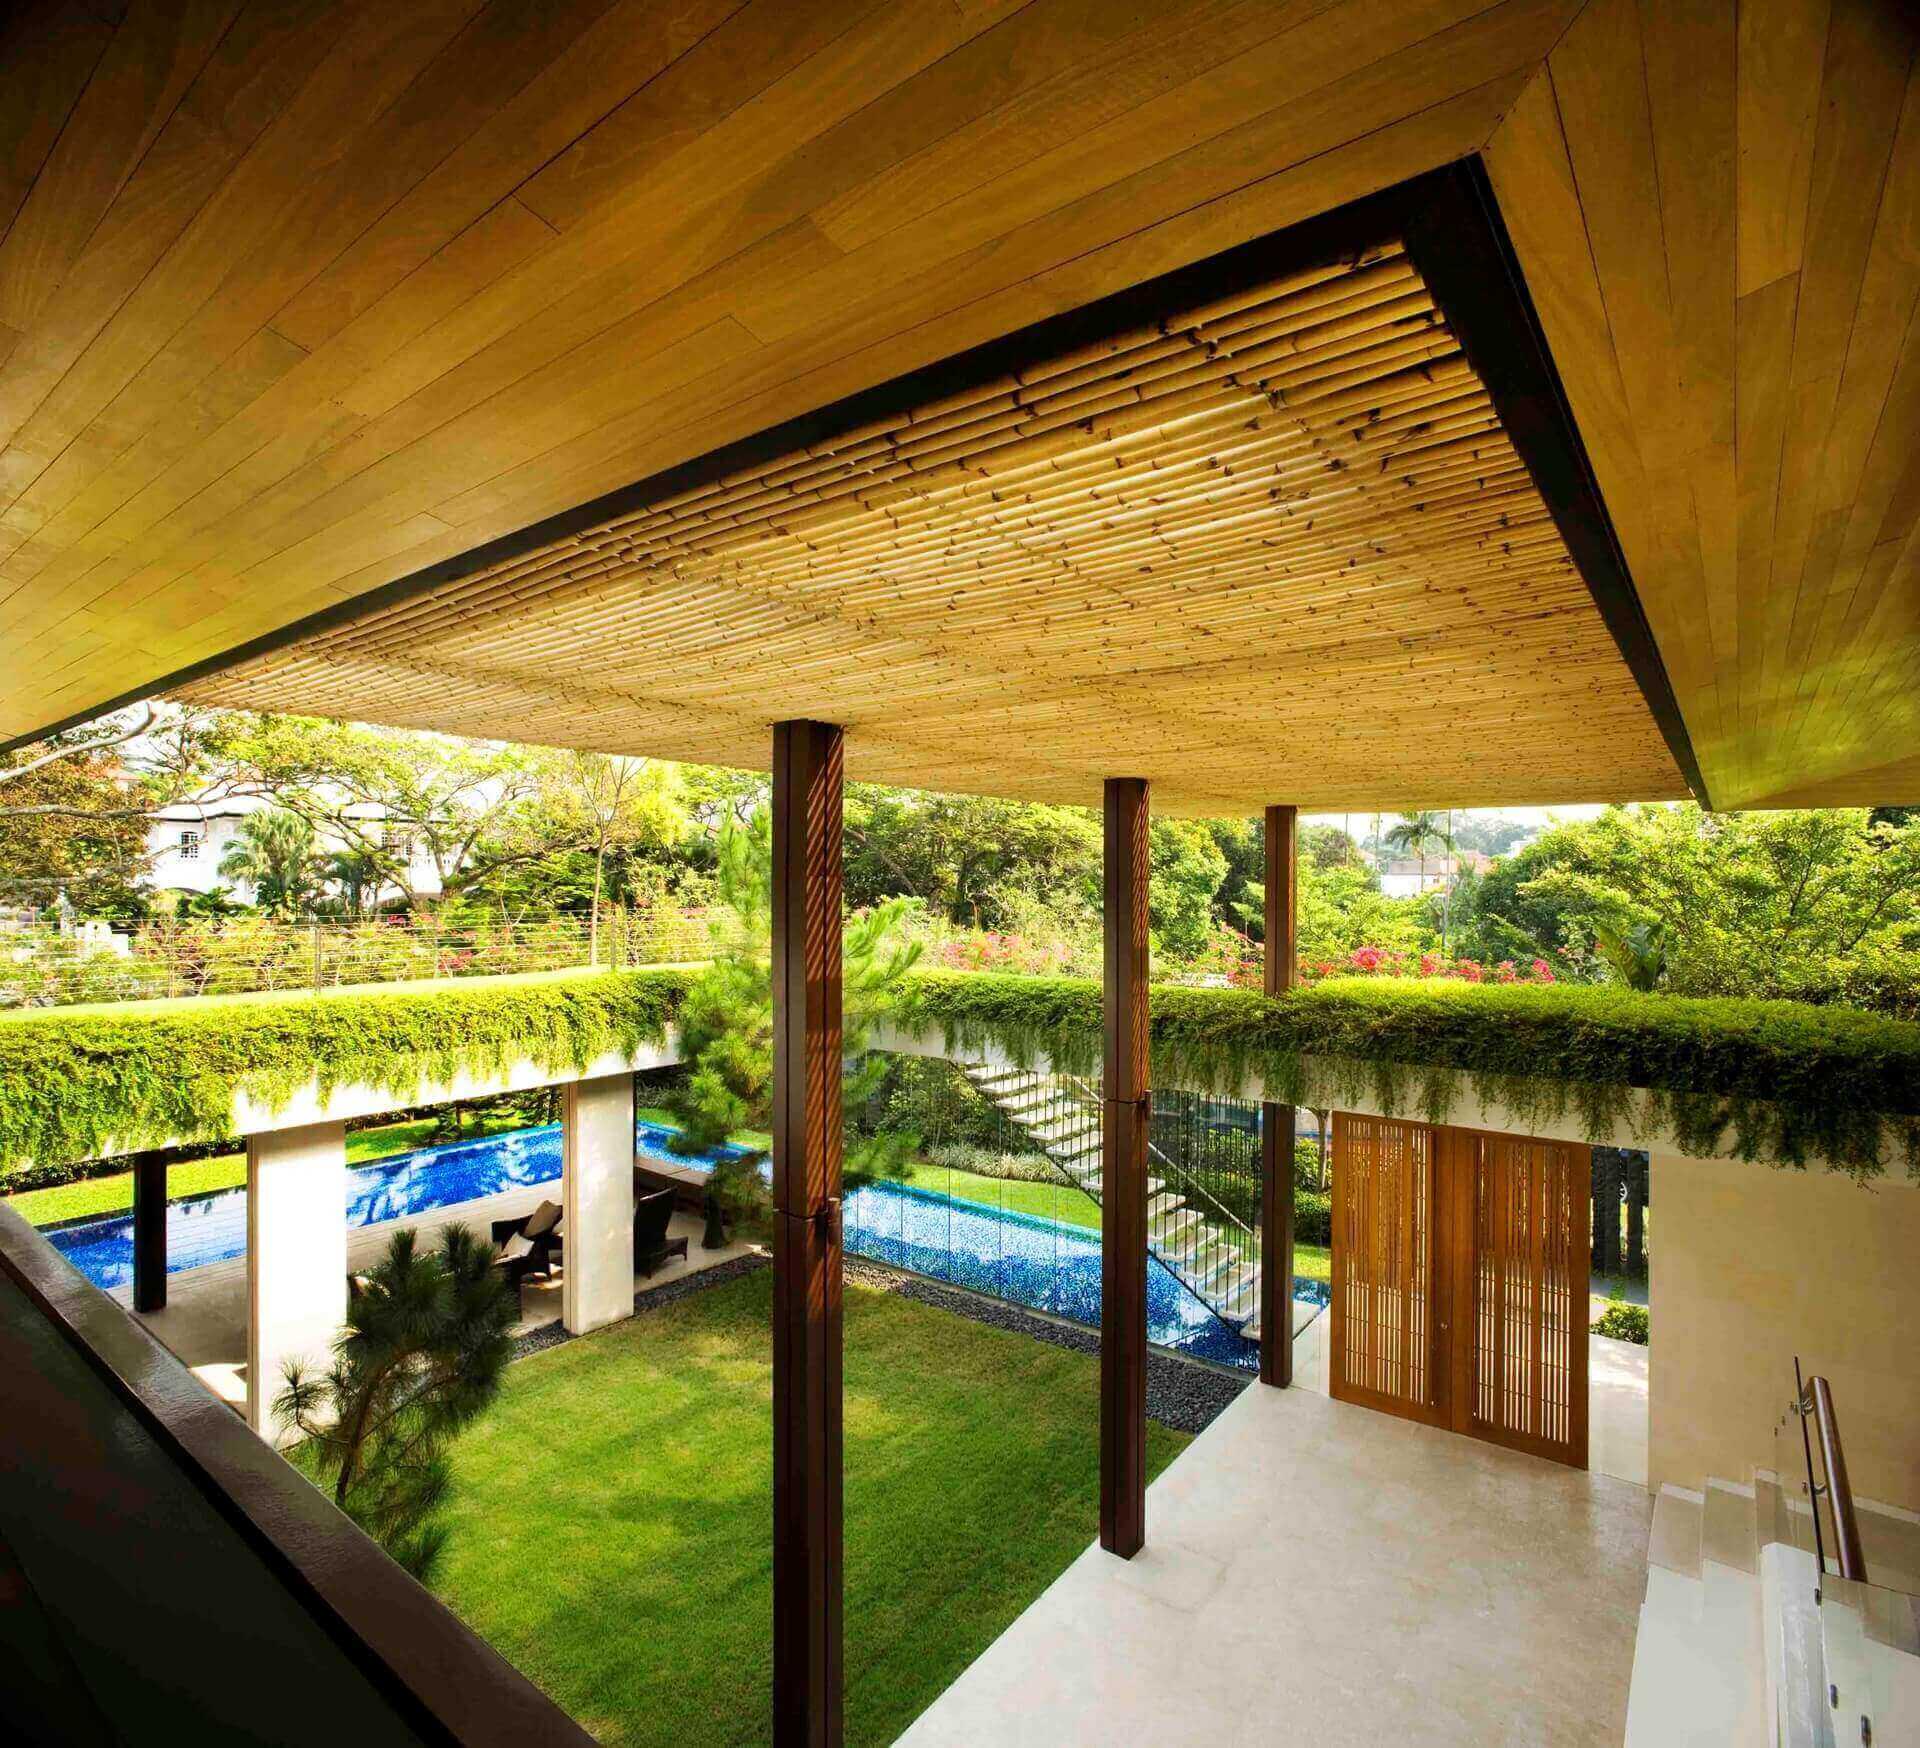 Tangga house không gian thiên nhiên từ Singapore